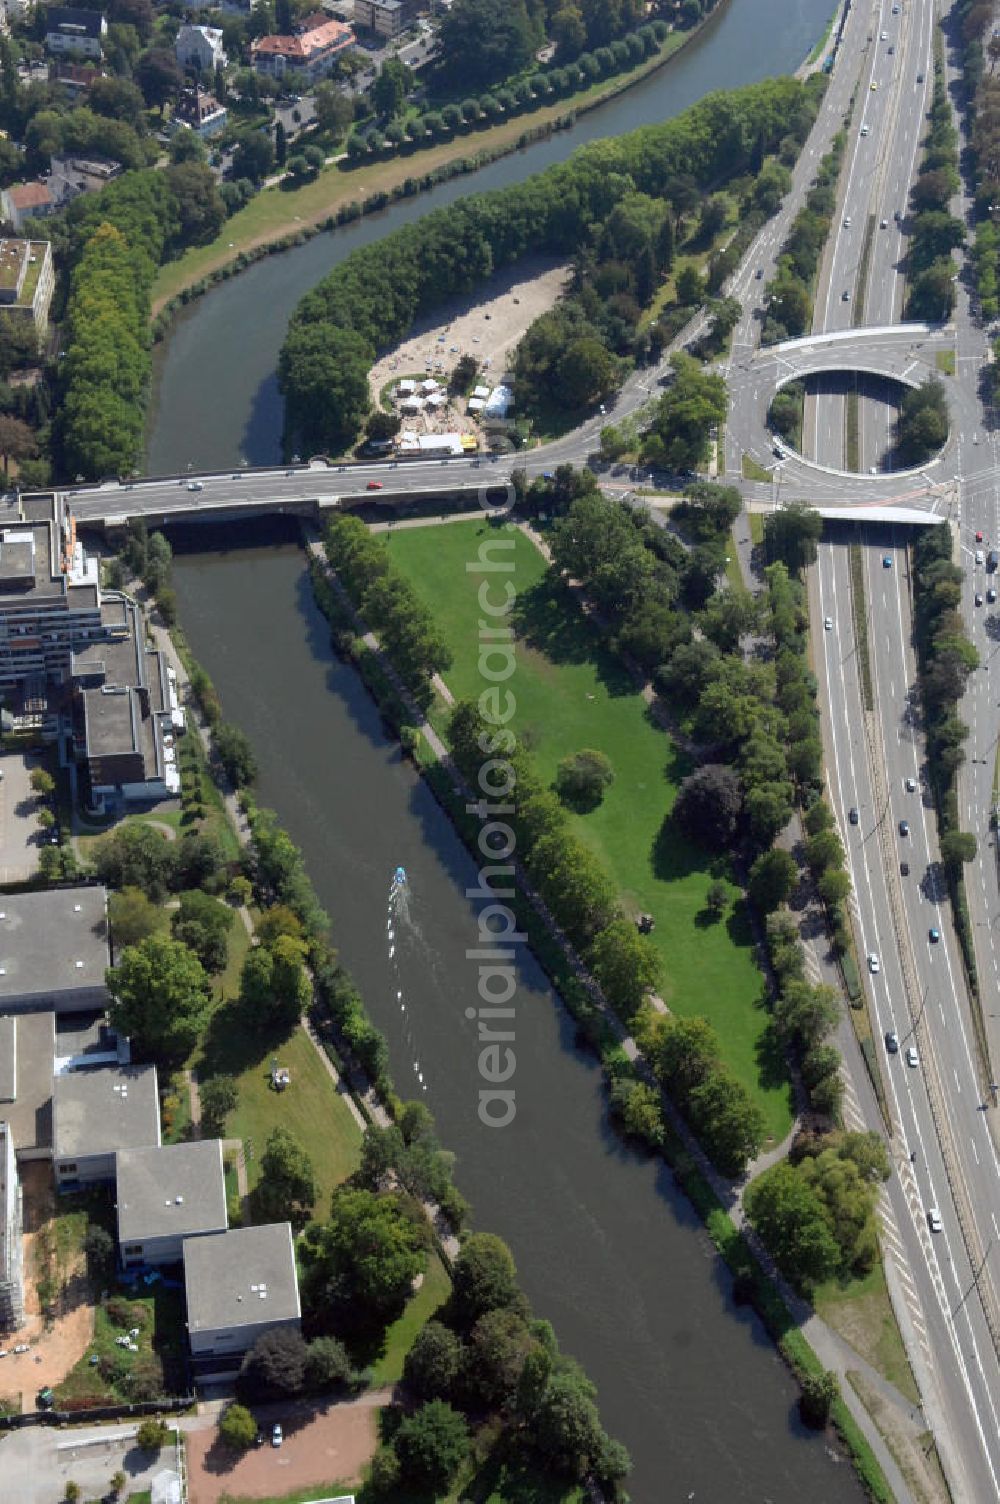 Aerial photograph Saarbrücken - Blick aus Osten entlang der Saar in Saarbrücken im Saarland. Am linken Saarufer erstreckt sich die Autobahn 620 mit der Ausfahrt Saarbrücken Bismarckbrücke im Stadtteil Alt-Saarbrücken. Am rechten Saarufer erstreckt sich der Stadtteil St. Johann. View from east along the Saar river.